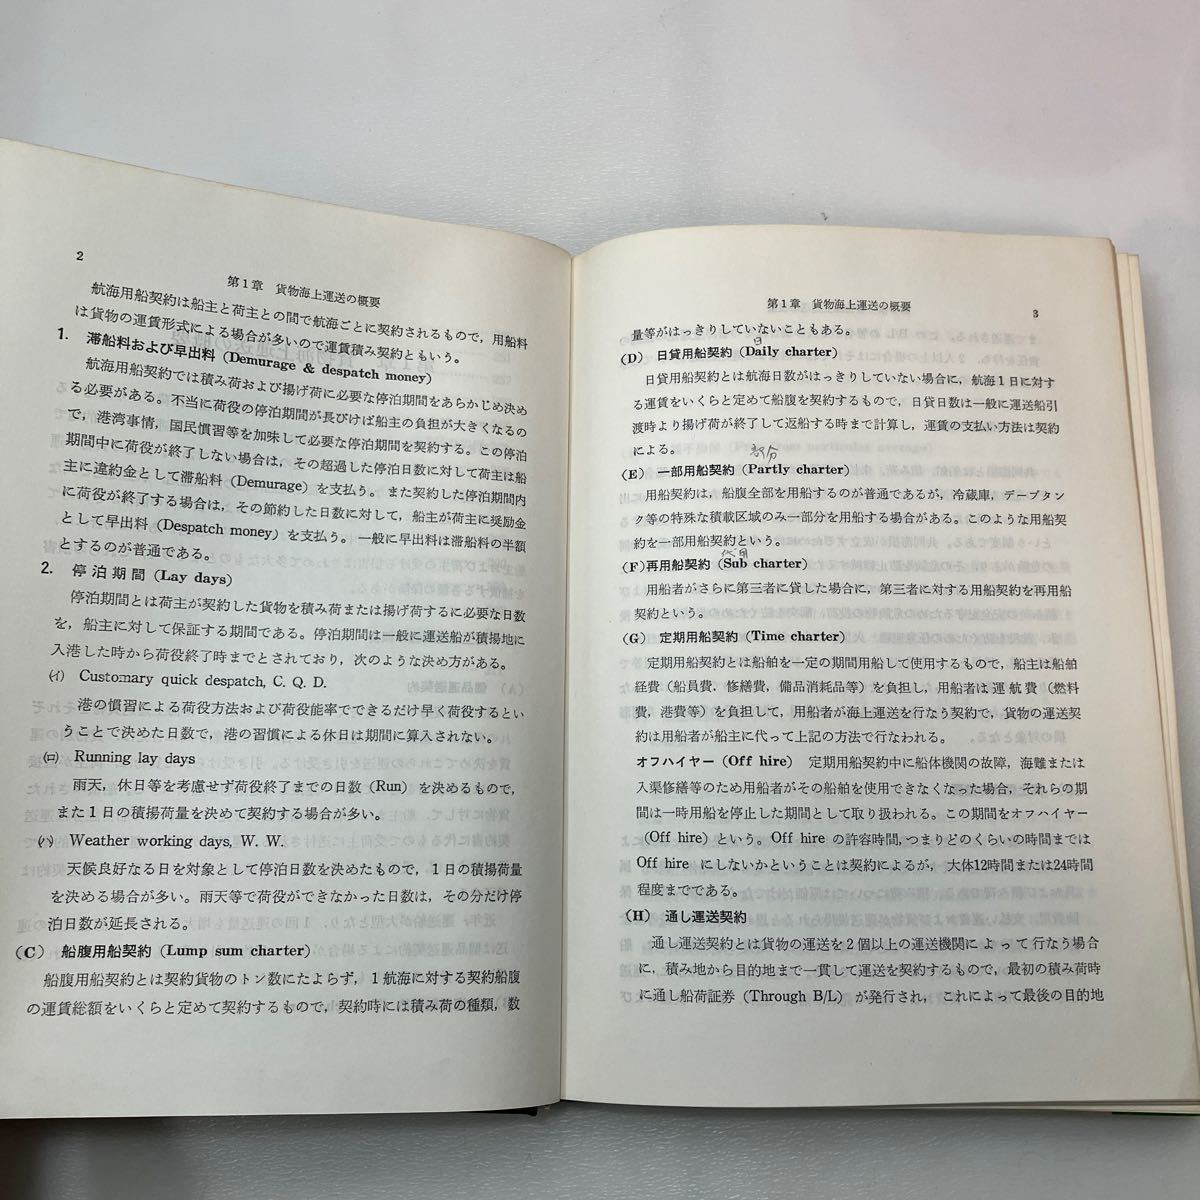 zaa555♪荷役実務 　運航技術研究会 (著) 　成山堂書店 　単行本 　1984/2/18